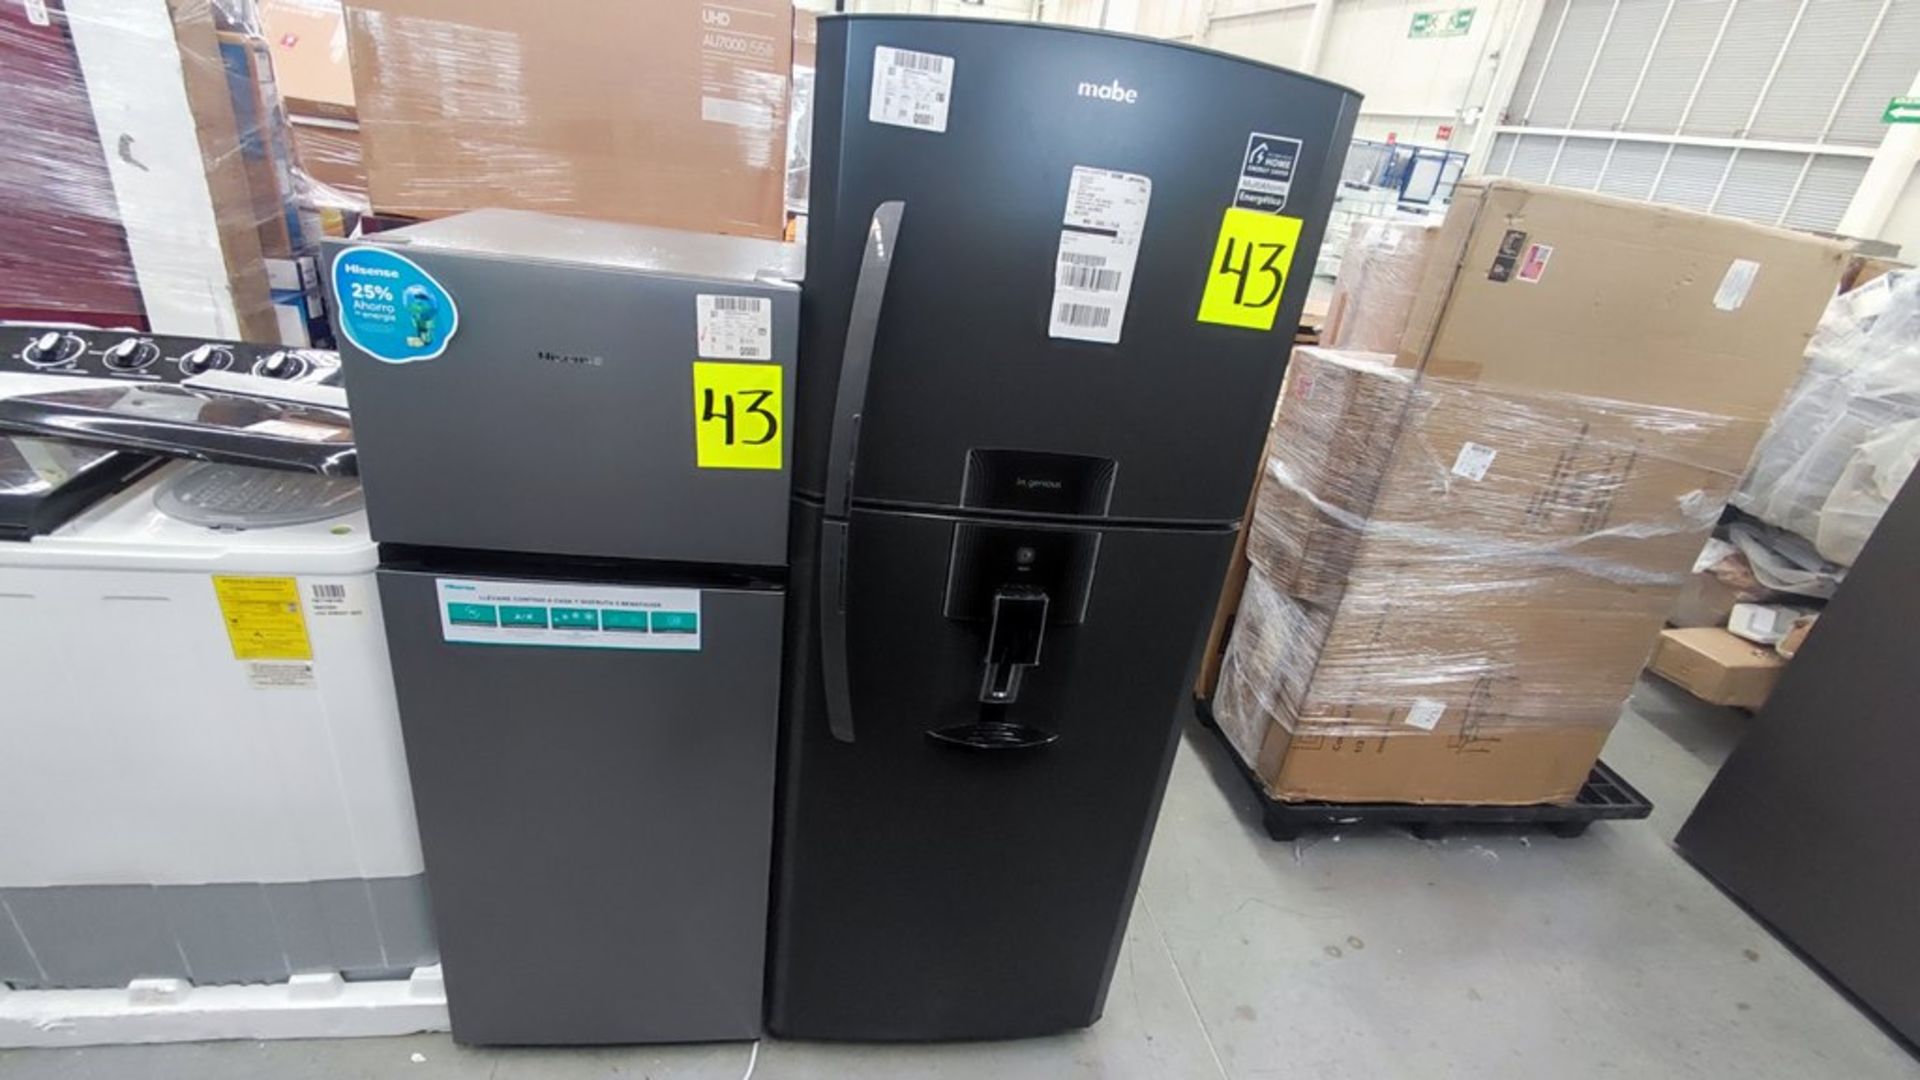 Lote de 2 Refrigeradores contiene: 1 Refrigerador Marca Mabe, Modelo RME360FD, No de serie 2206B511